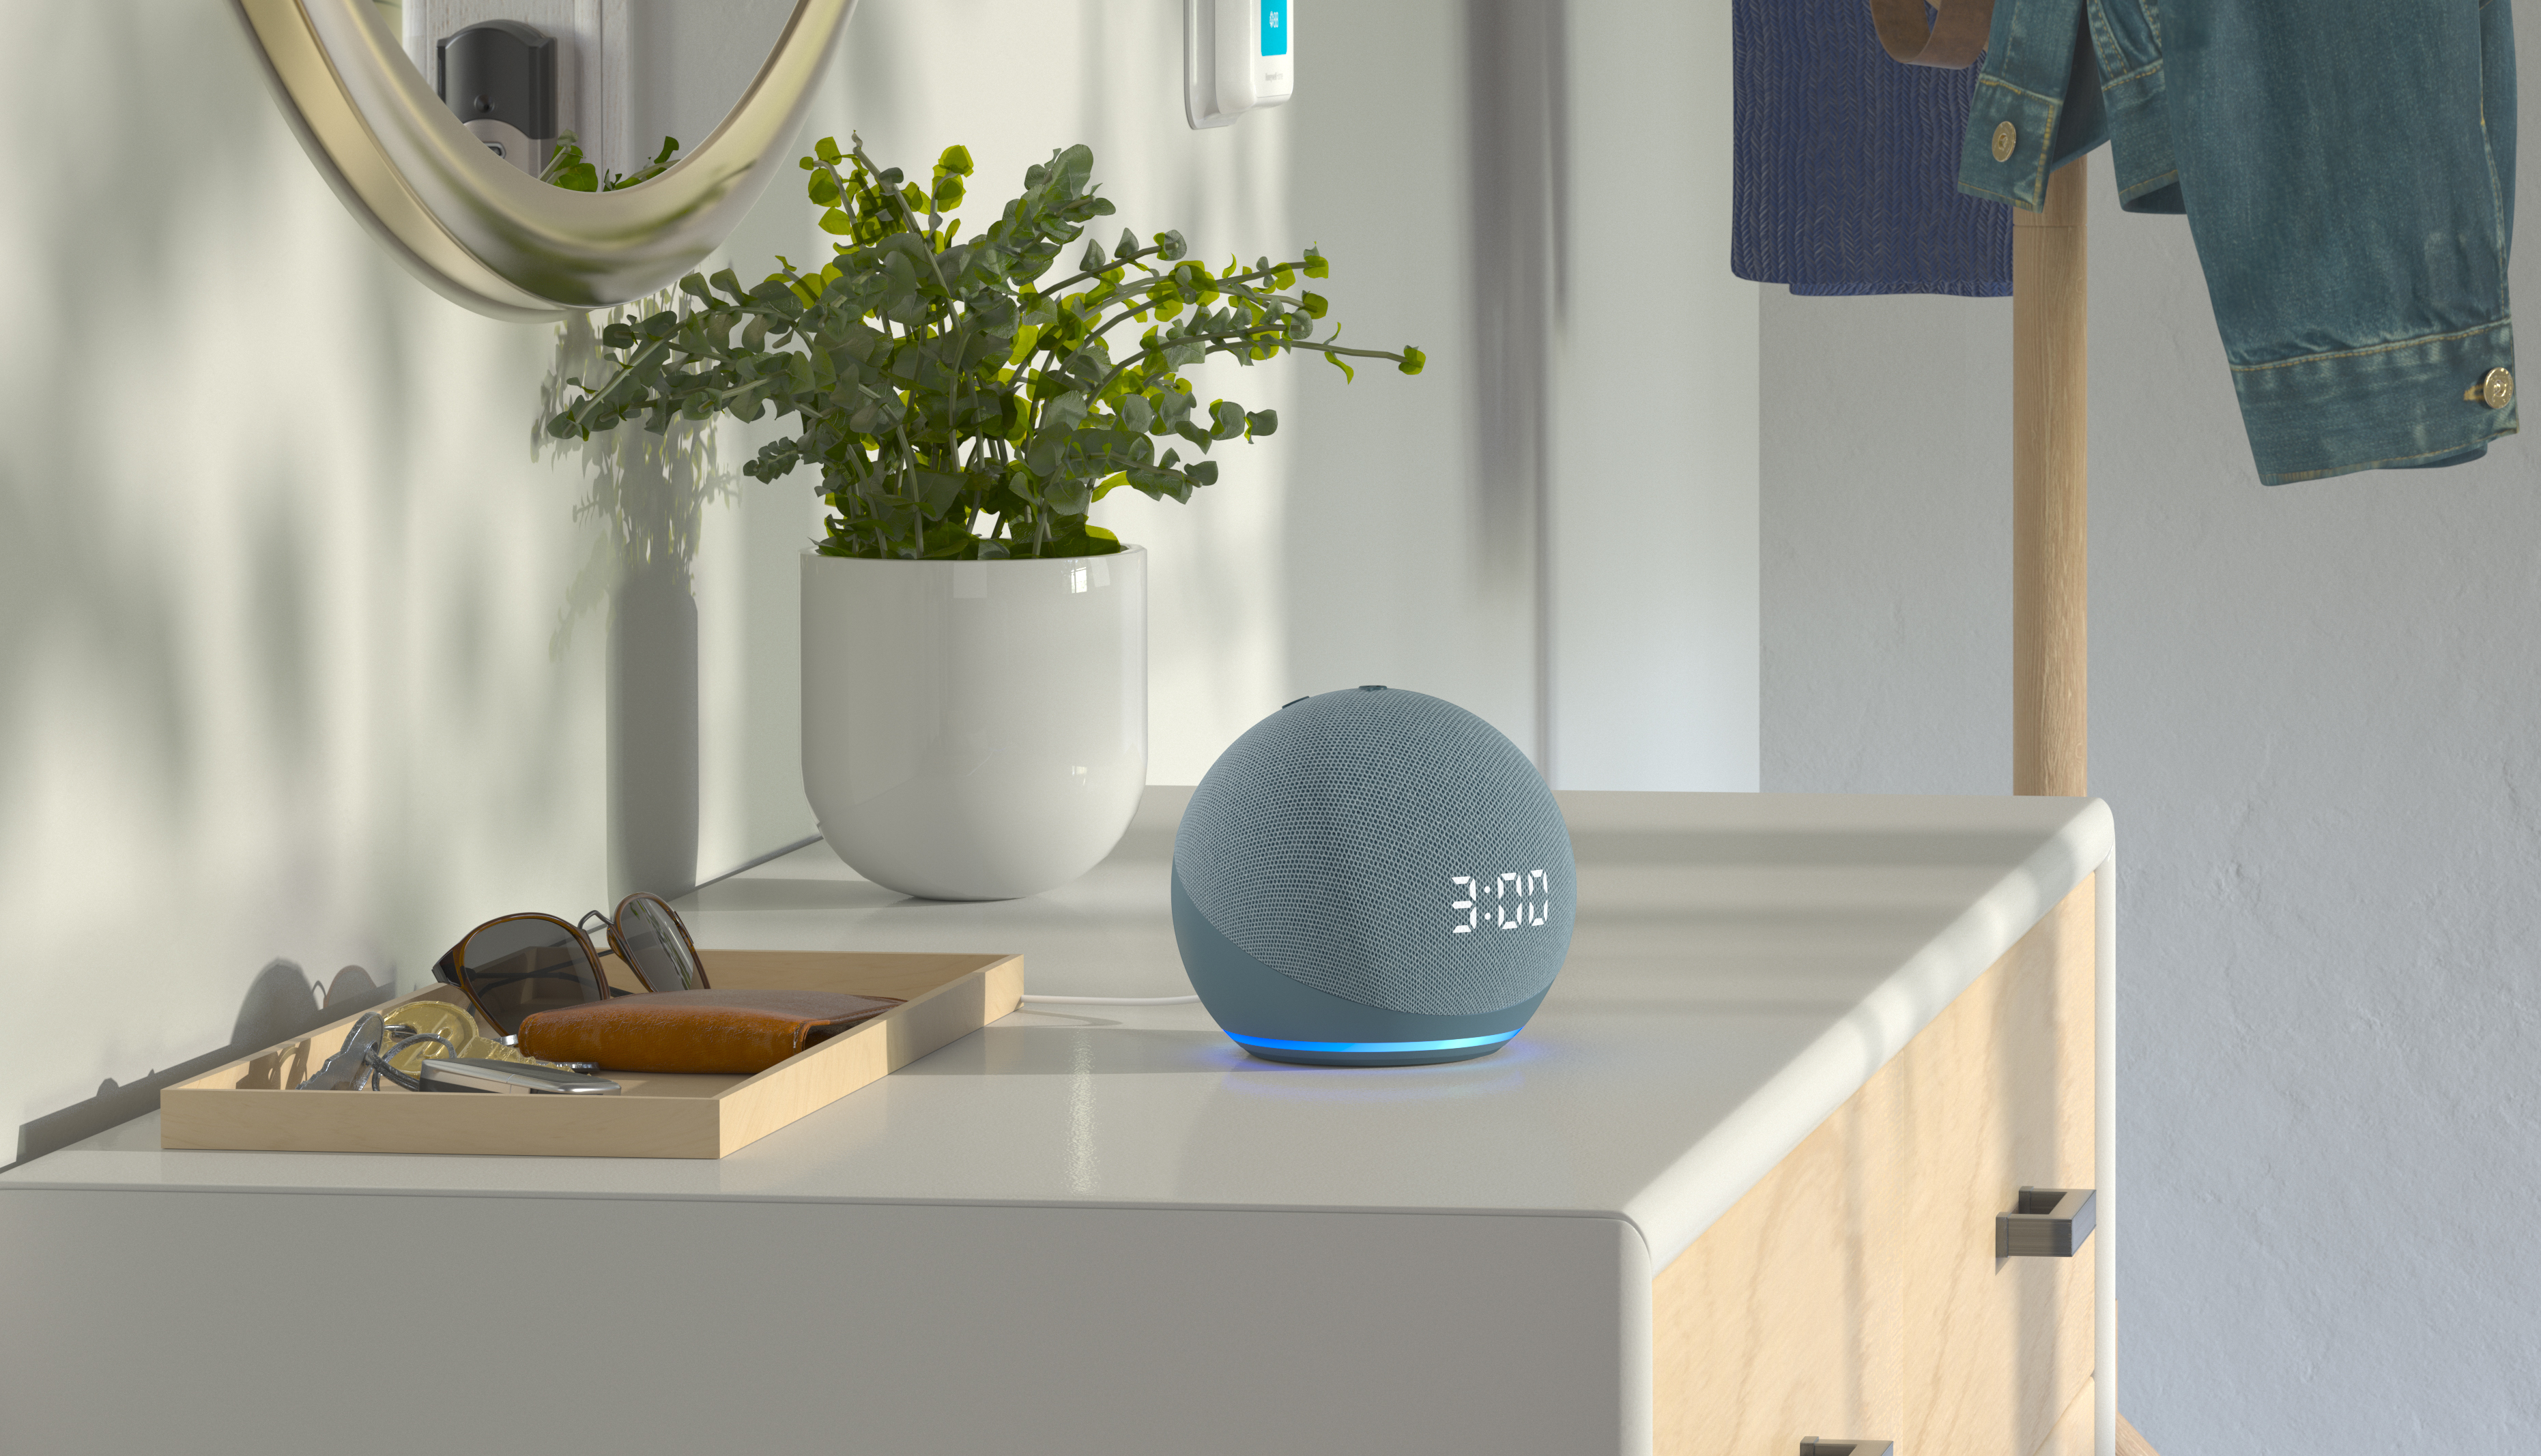 Ofertón en !: Consigue el altavoz inteligente Echo Dot con